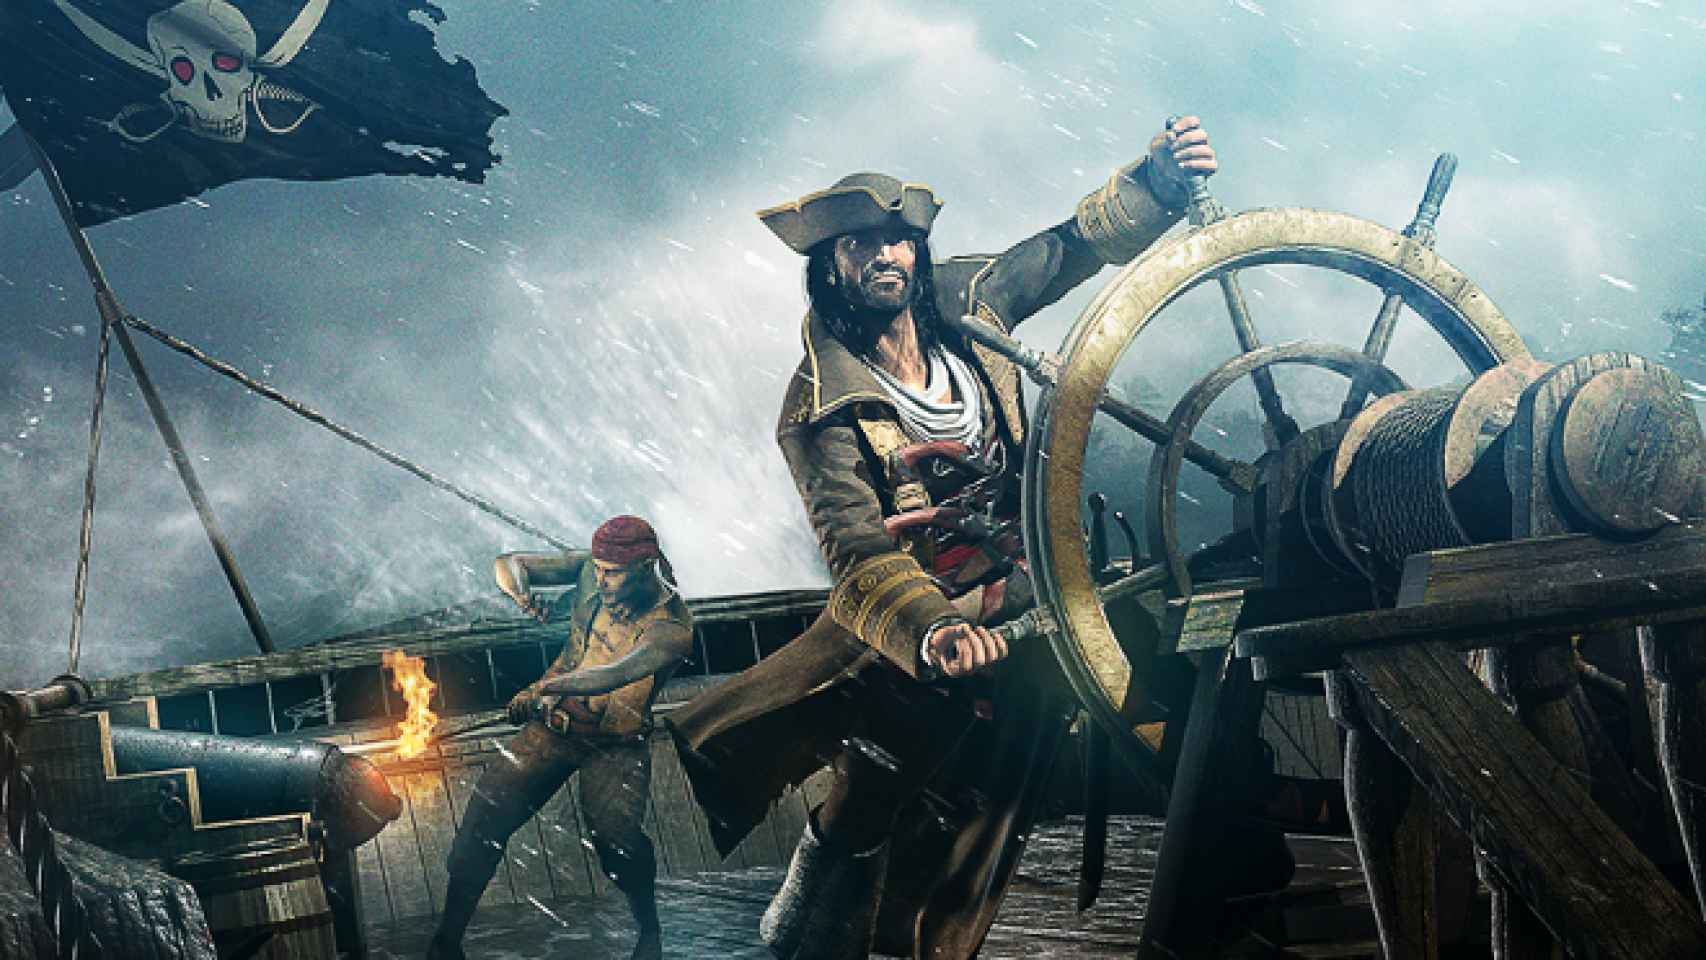 Assassin’s Creed Pirates nos pone al mando de nuestro propio barco pirata en nuestro Android